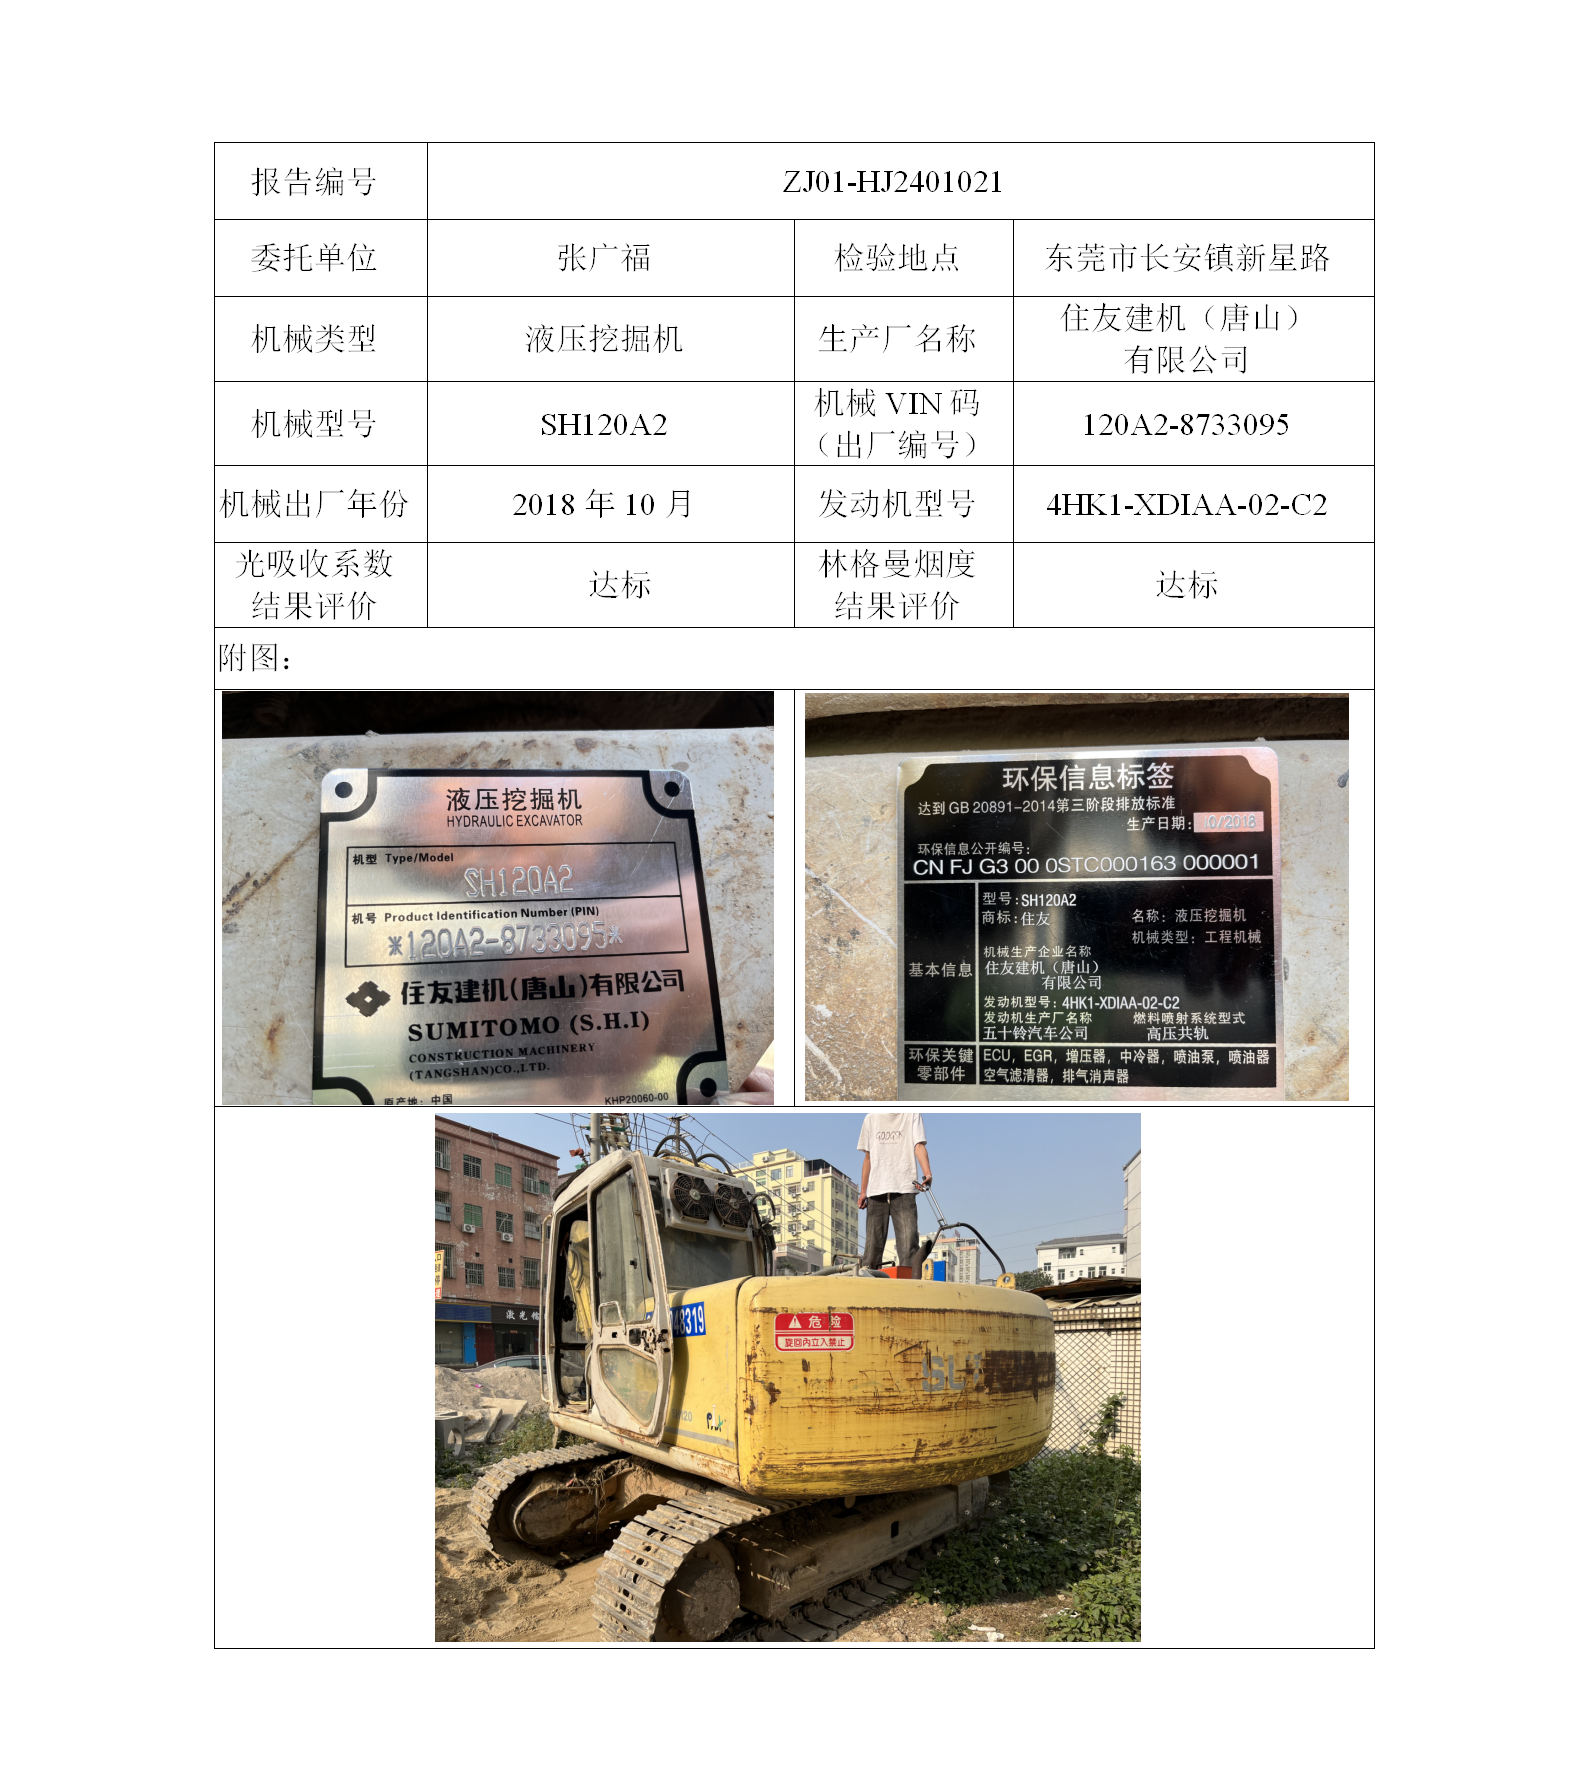 委托-ZJ01-HJ2401021张广福的非道路机械设备二维码-张伟仪_01.png